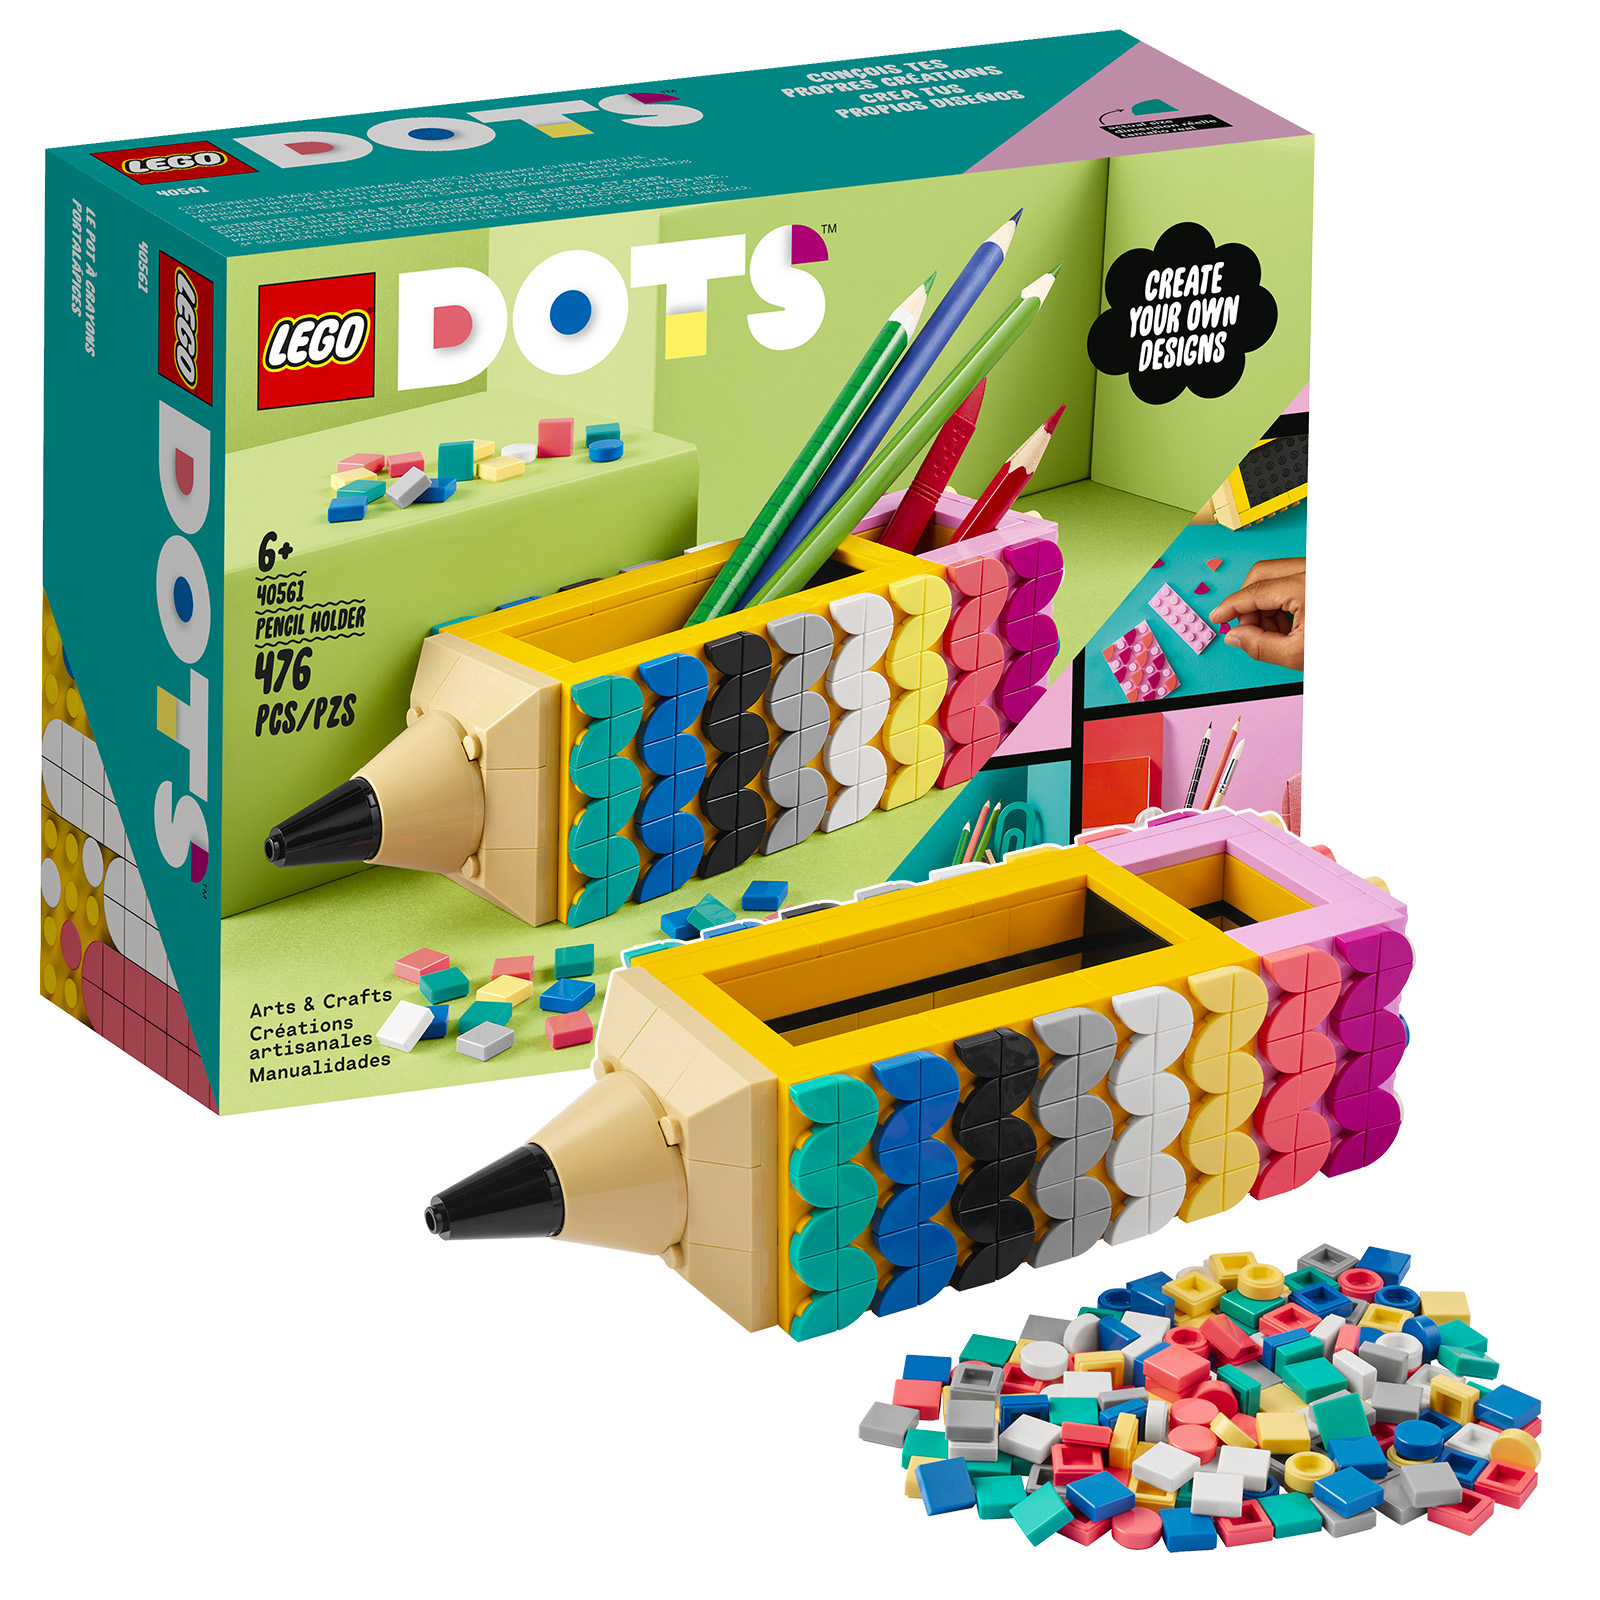 În magazinul LEGO: set gratuit de suport pentru creion DOTS 40561 și pungă de polietilenă Super Mario 30509 Yellow Yoshi Fruit Tree